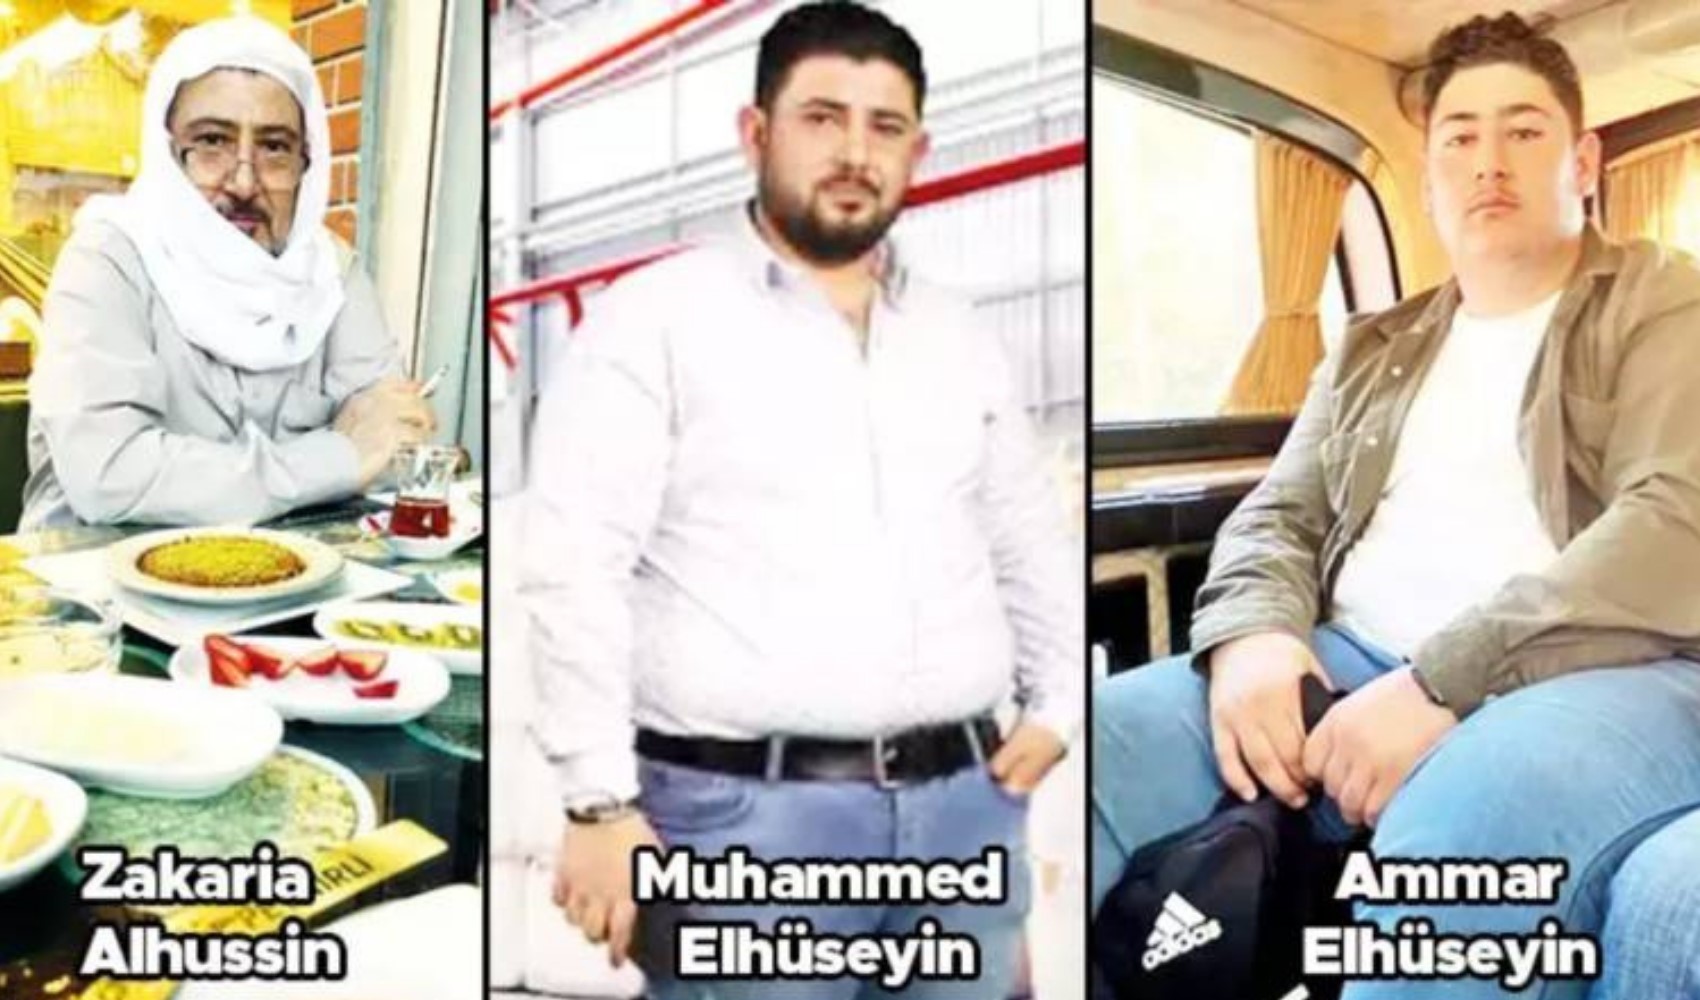 Gazantep’te yaşayan Lübnanlı iş insanı Suriyeli kişiler tarafından dolandırıldı: Lübnan Türkiye’ye nota verdi